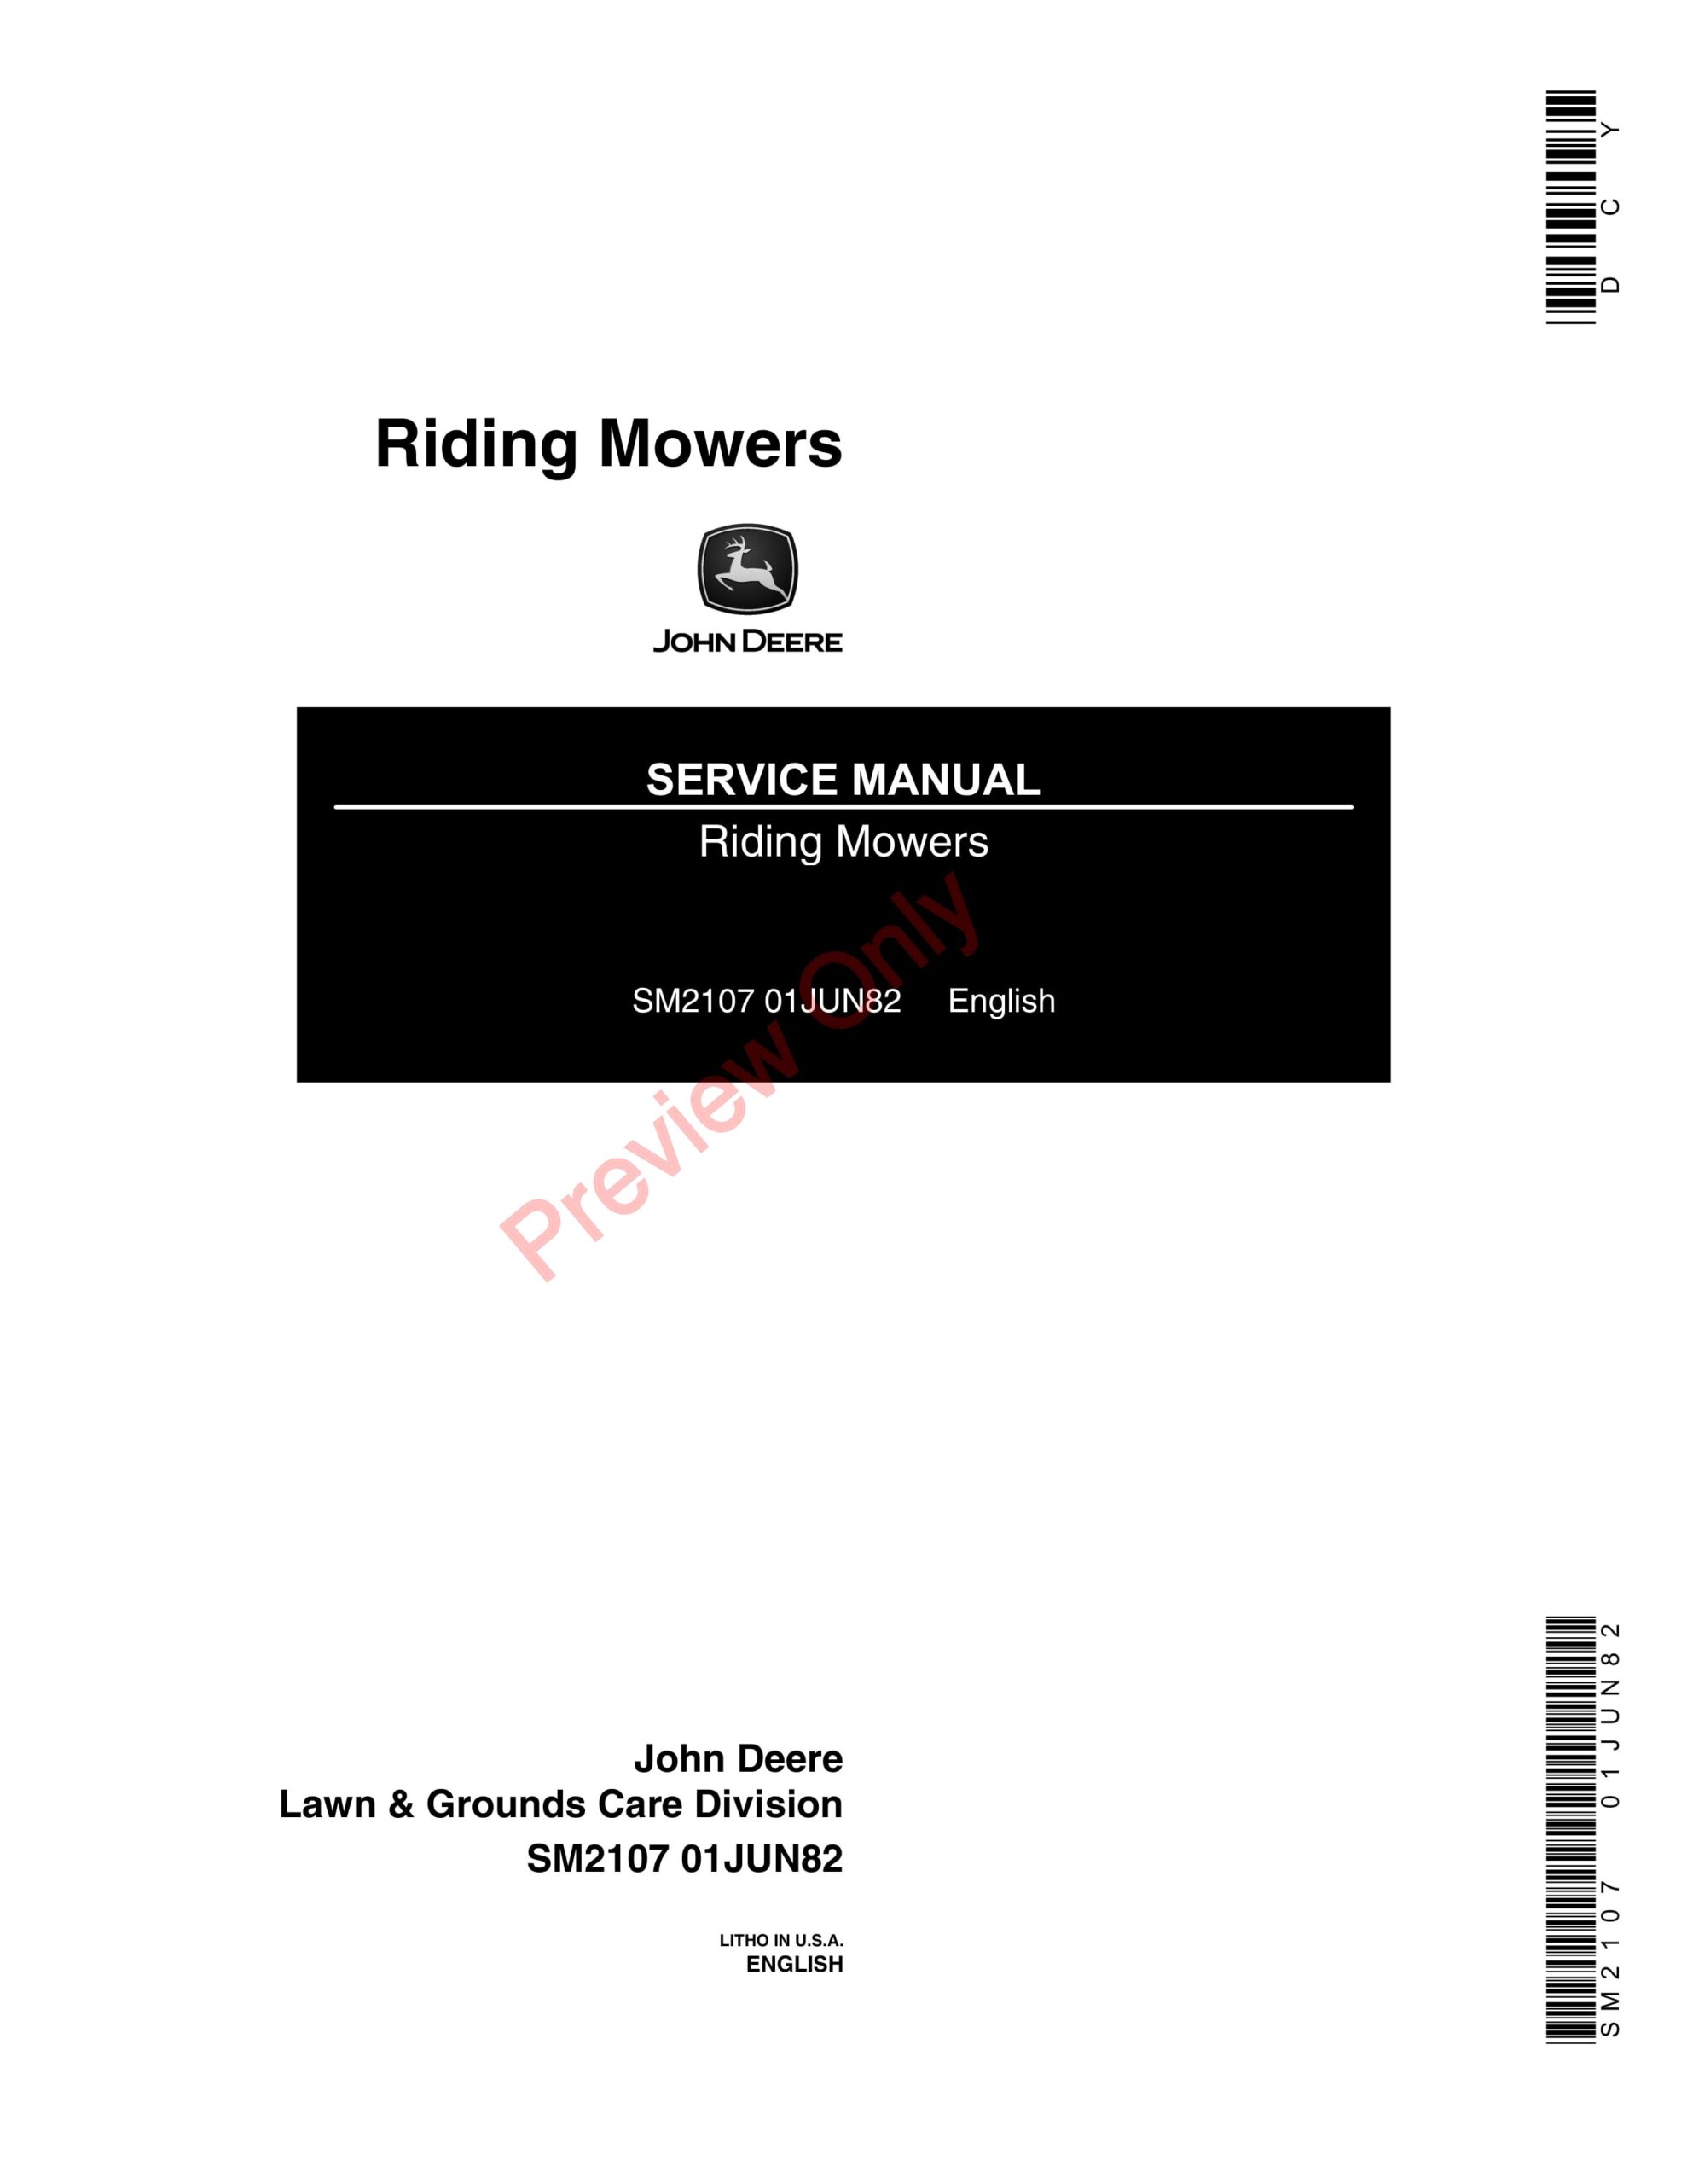 John Deere Riding Mowers Service Manual SM2107 01JUN82-1